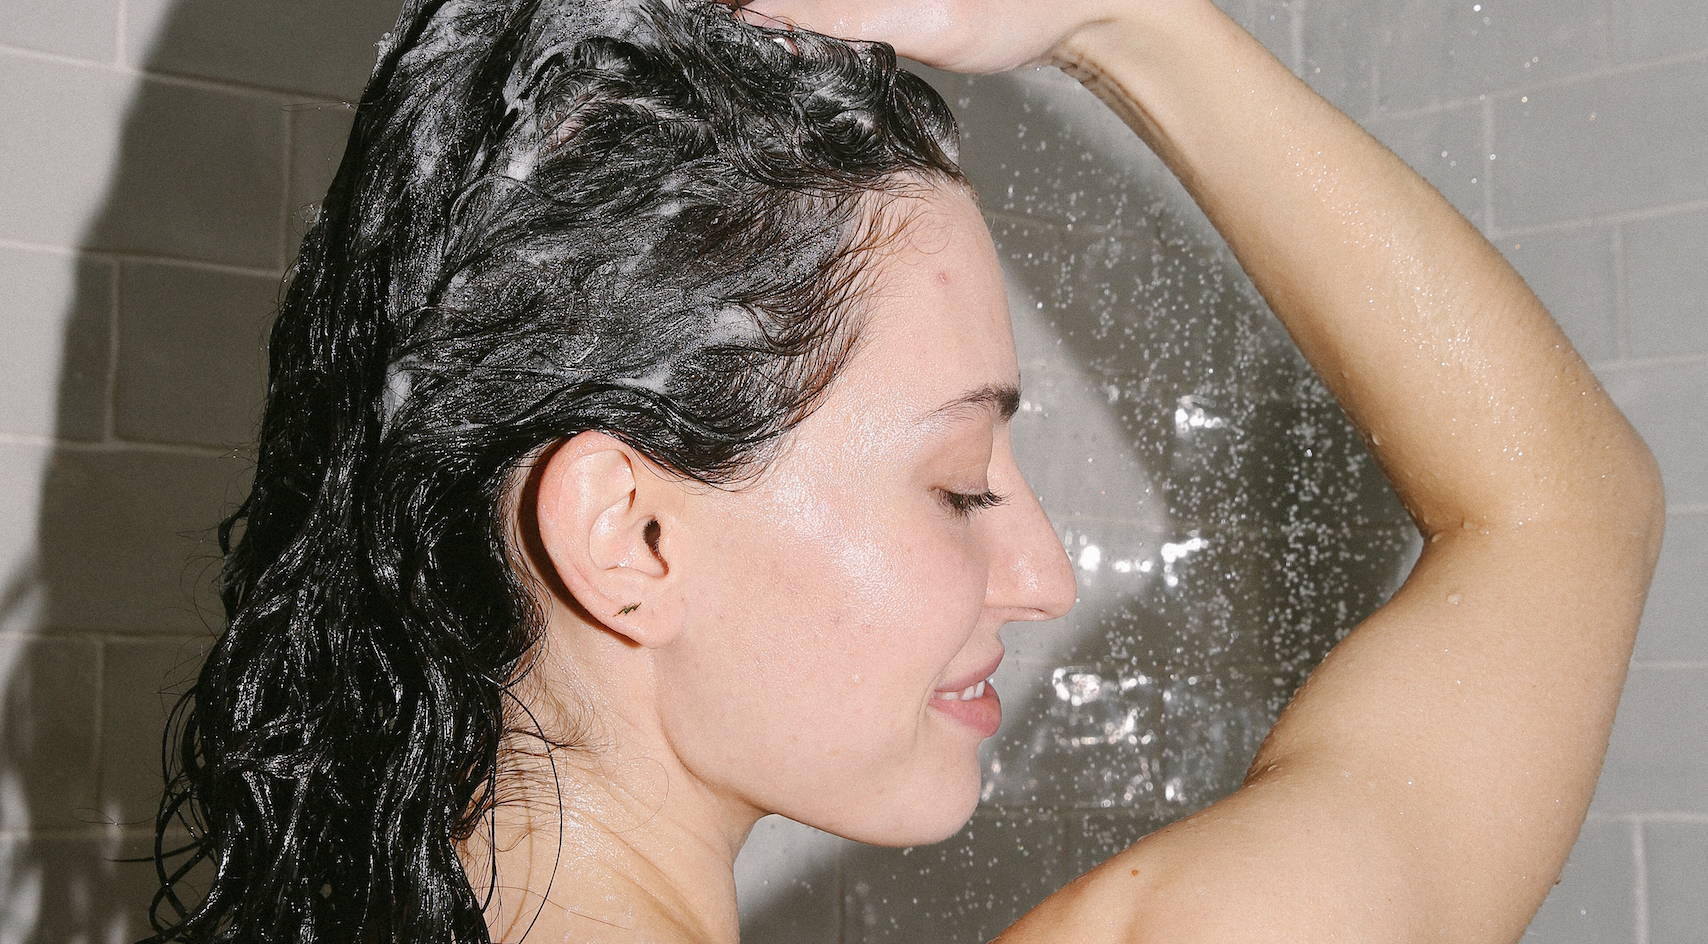 Benefits of using clarifying shampoo